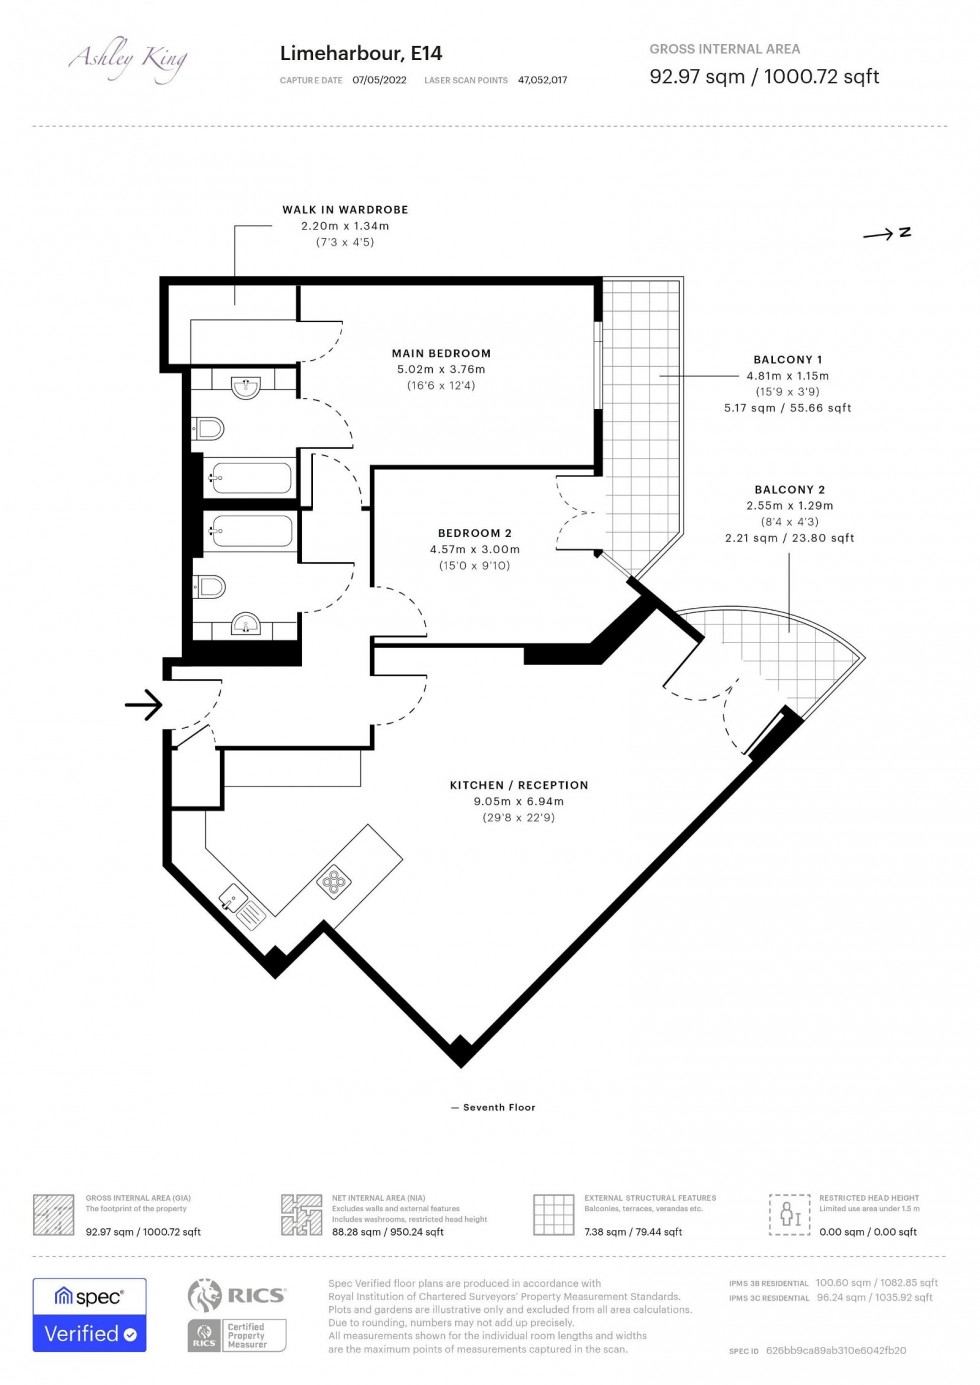 Floorplan for Limeharbour, London, E14 9LU